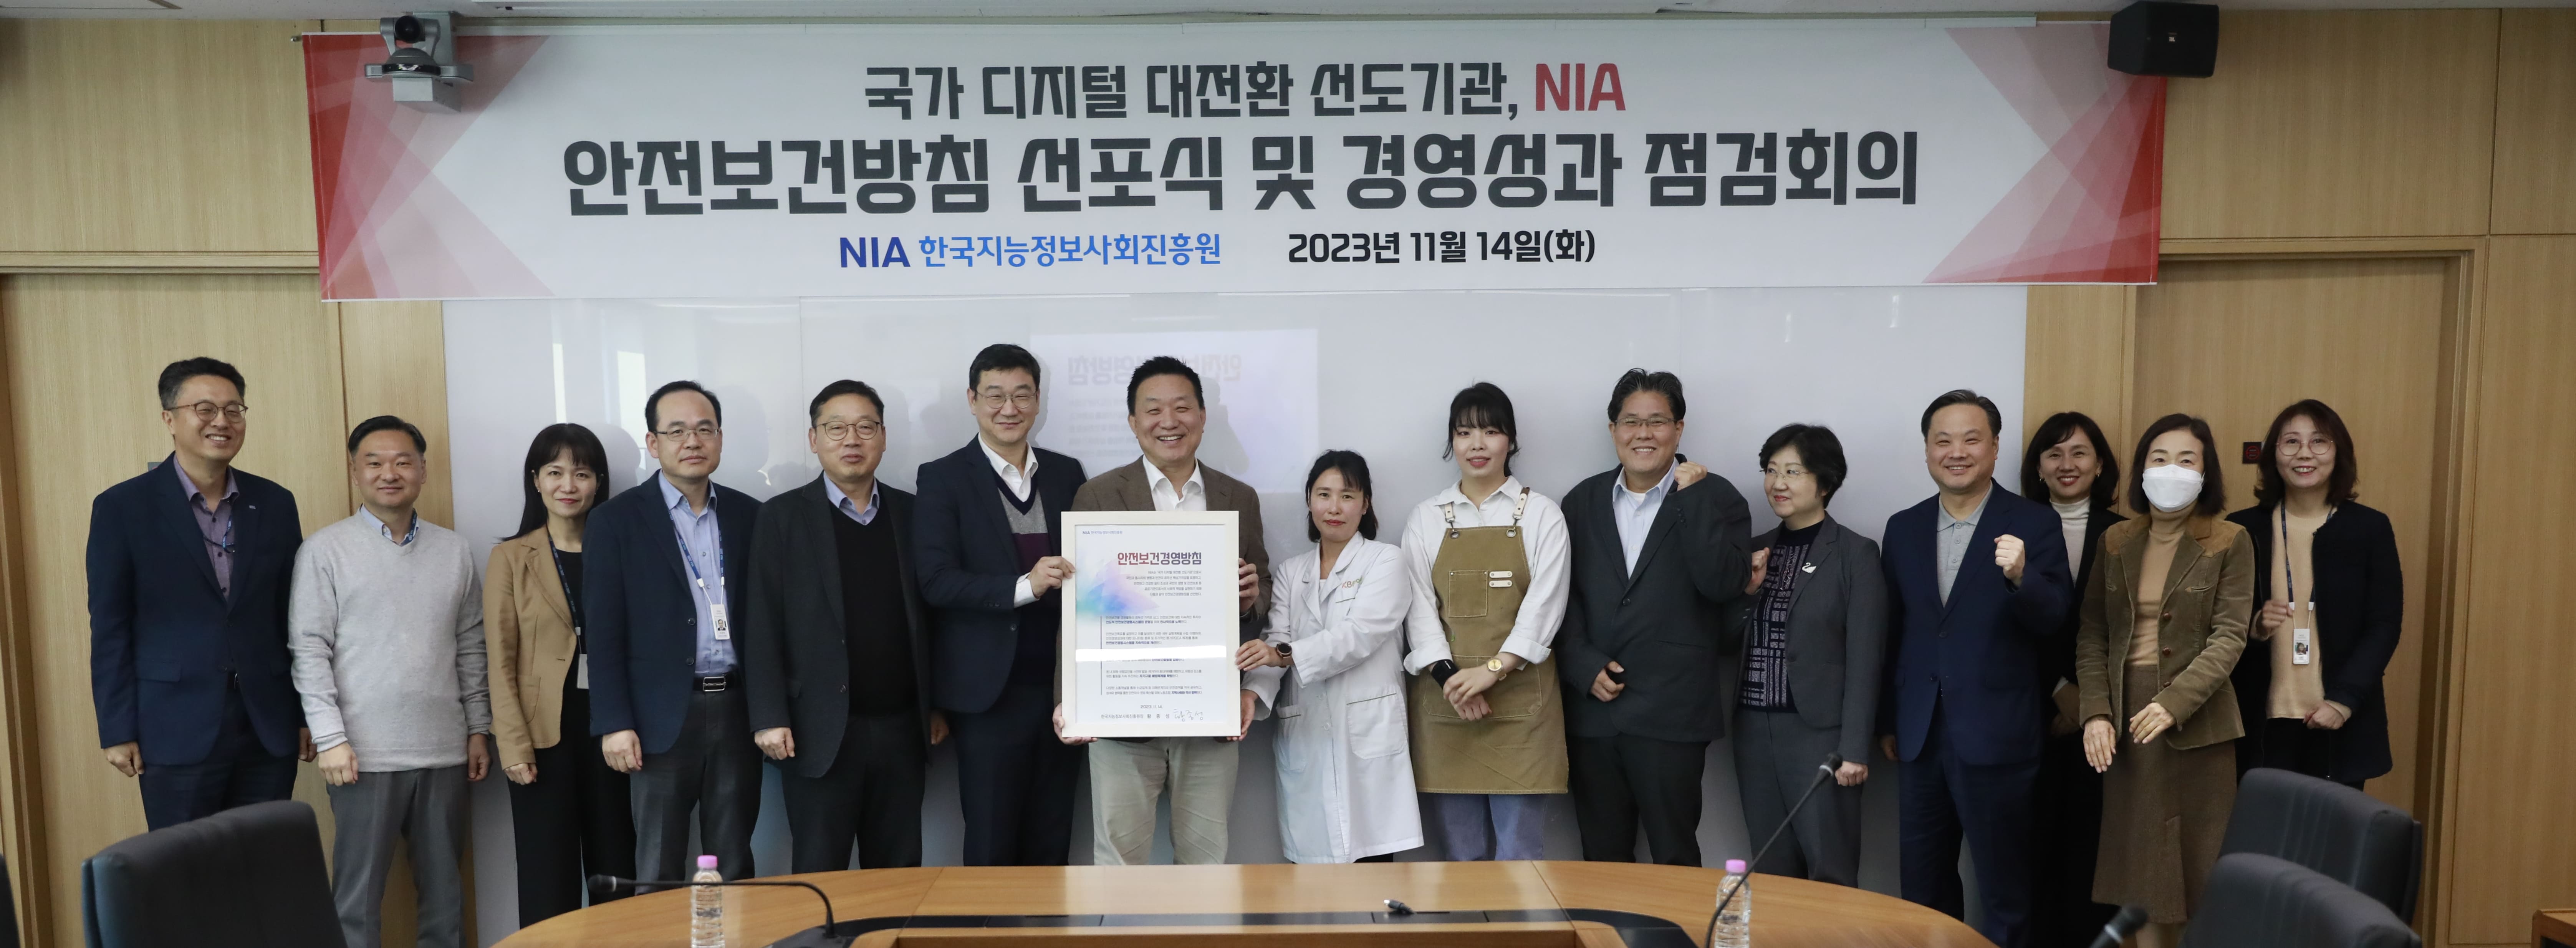 [보도자료] NIA, 안전보건경영방침 선포식 개최 썸네일